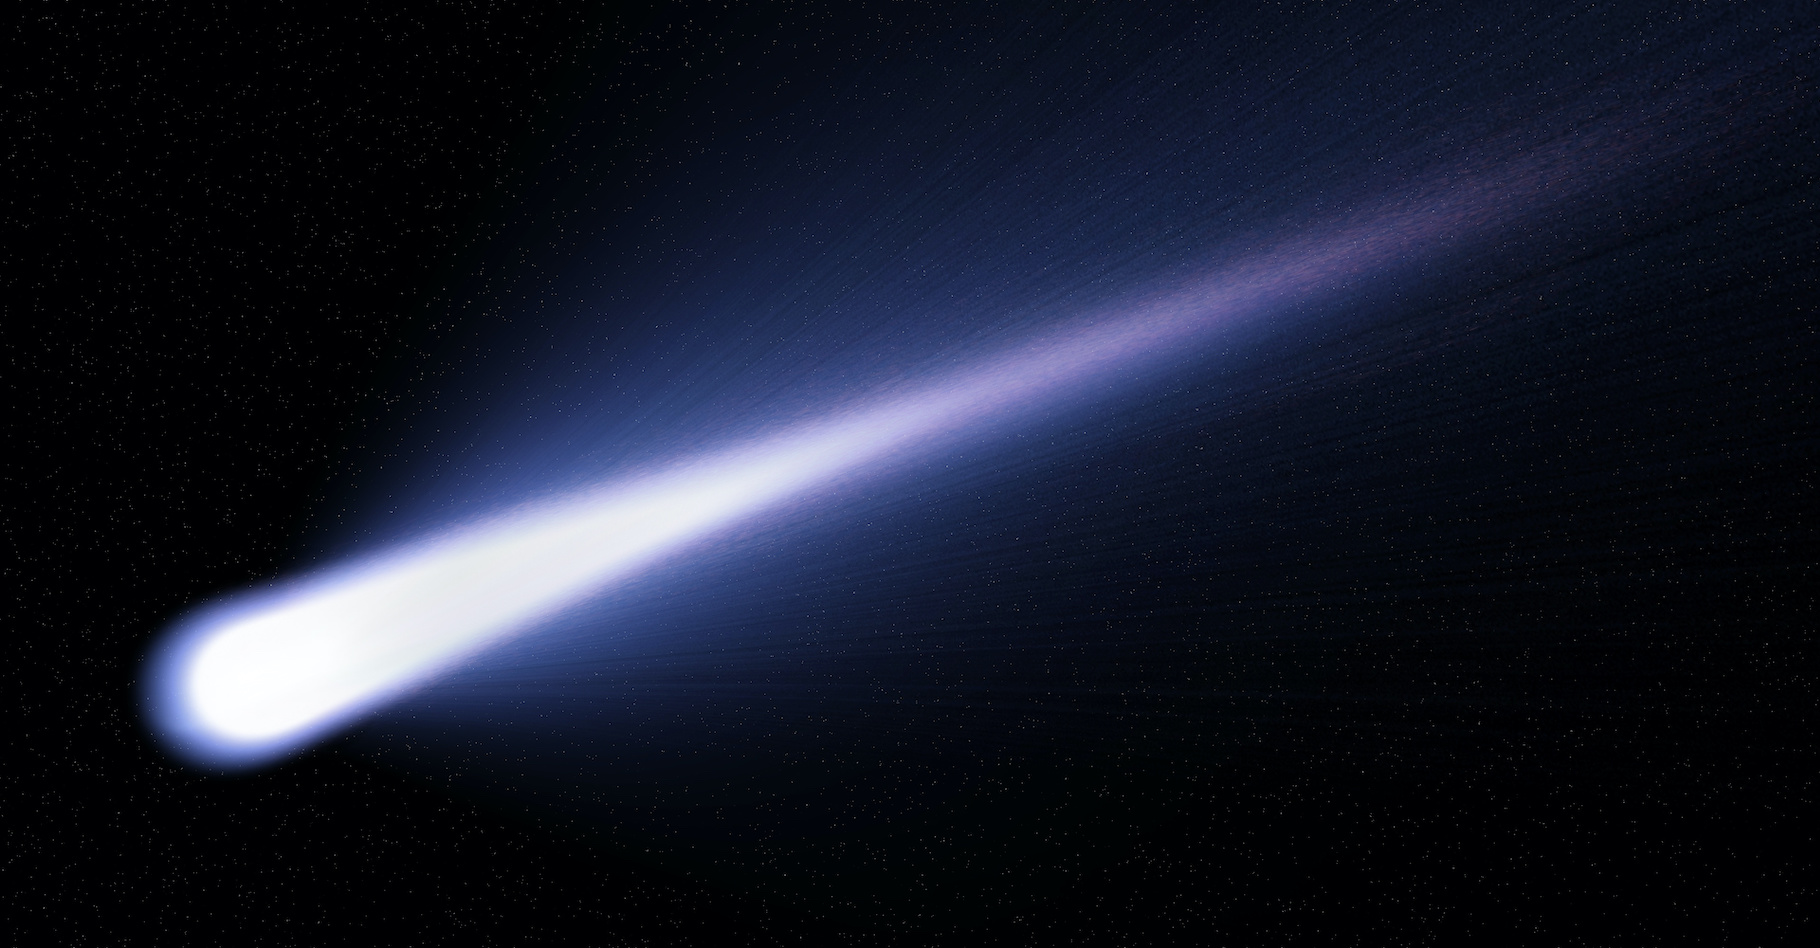 Les observations de chercheurs de l’université de Cracovie (Pologne) laissent penser que la comète interstellaire Borisov est en train de se fragmenter. Ici, une image d’illustration, une vue d’artiste montrant une comète quelconque. © Martin, Adobe Stock